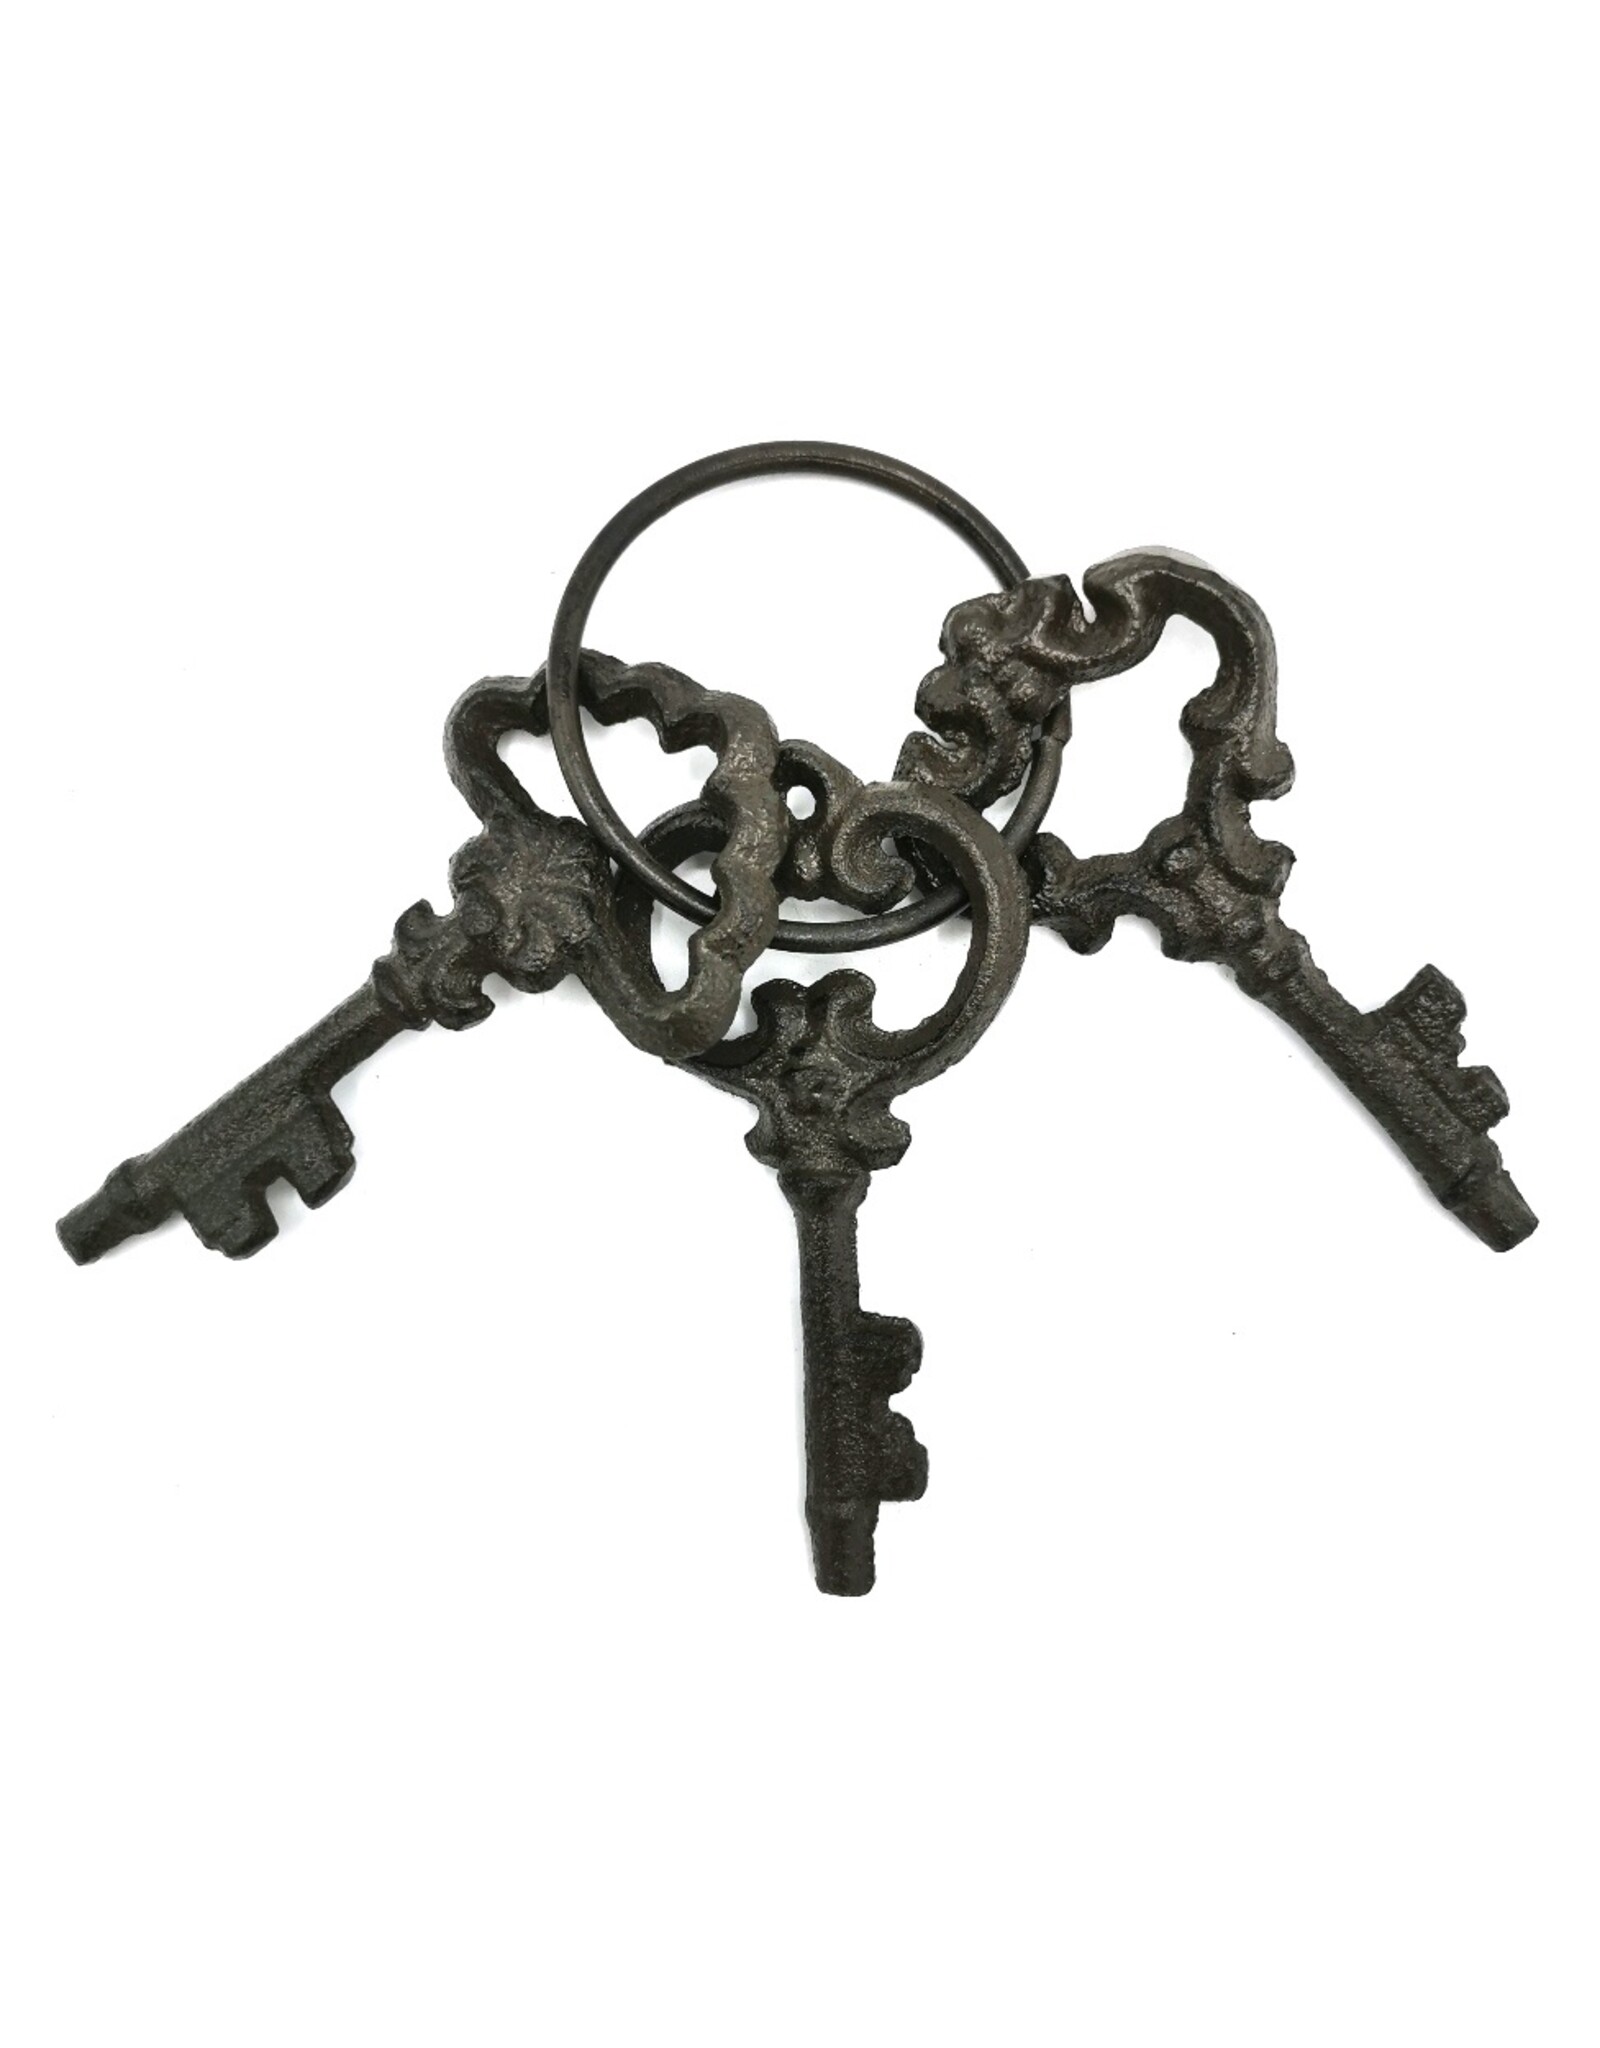 Trukado Giftware & Lifestyle - Antique look keys set 3 pieces - cast iron 11cm